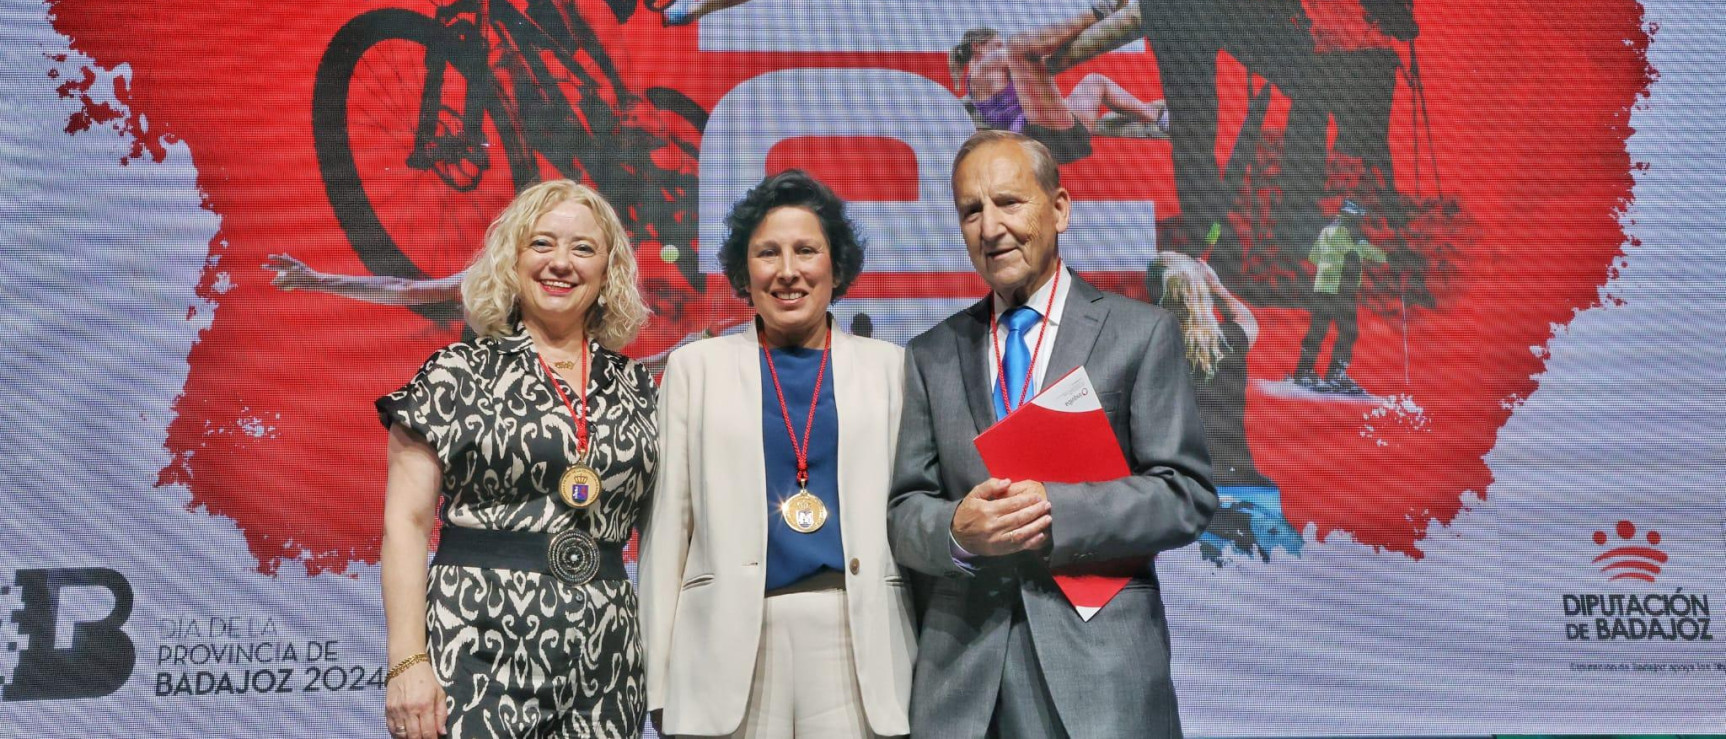 Asunción Gómez-Pérez, Medalla de Oro de Badajoz 2024